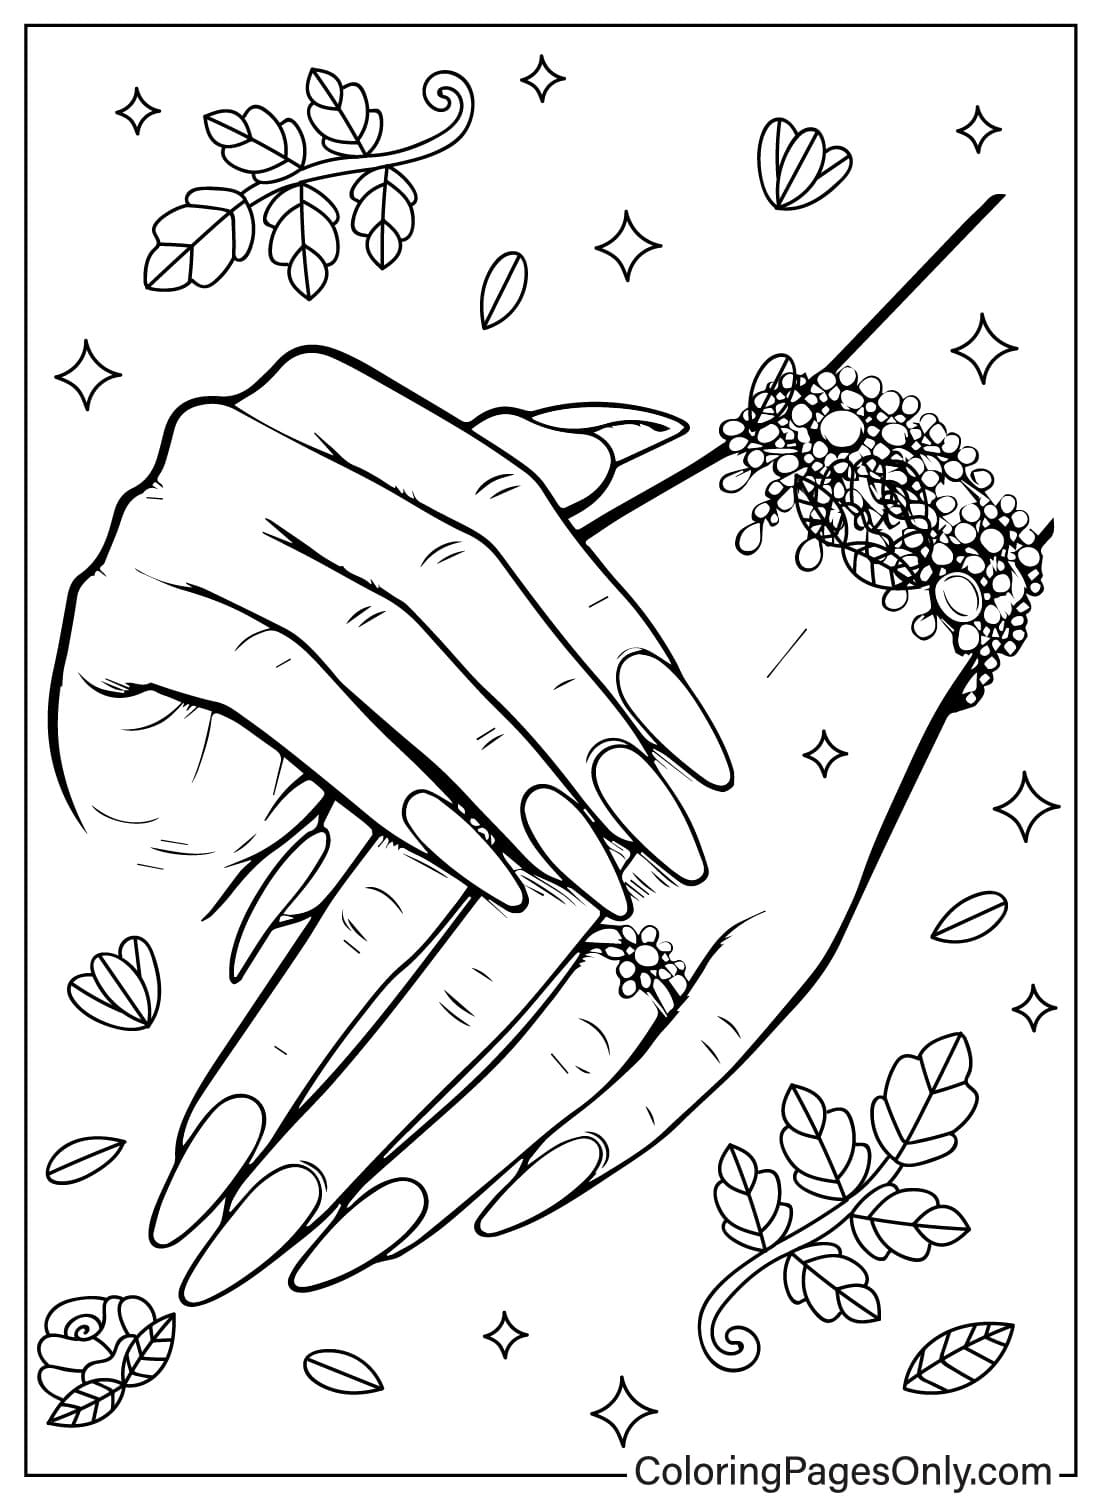 Página para colorear de uñas de Nails